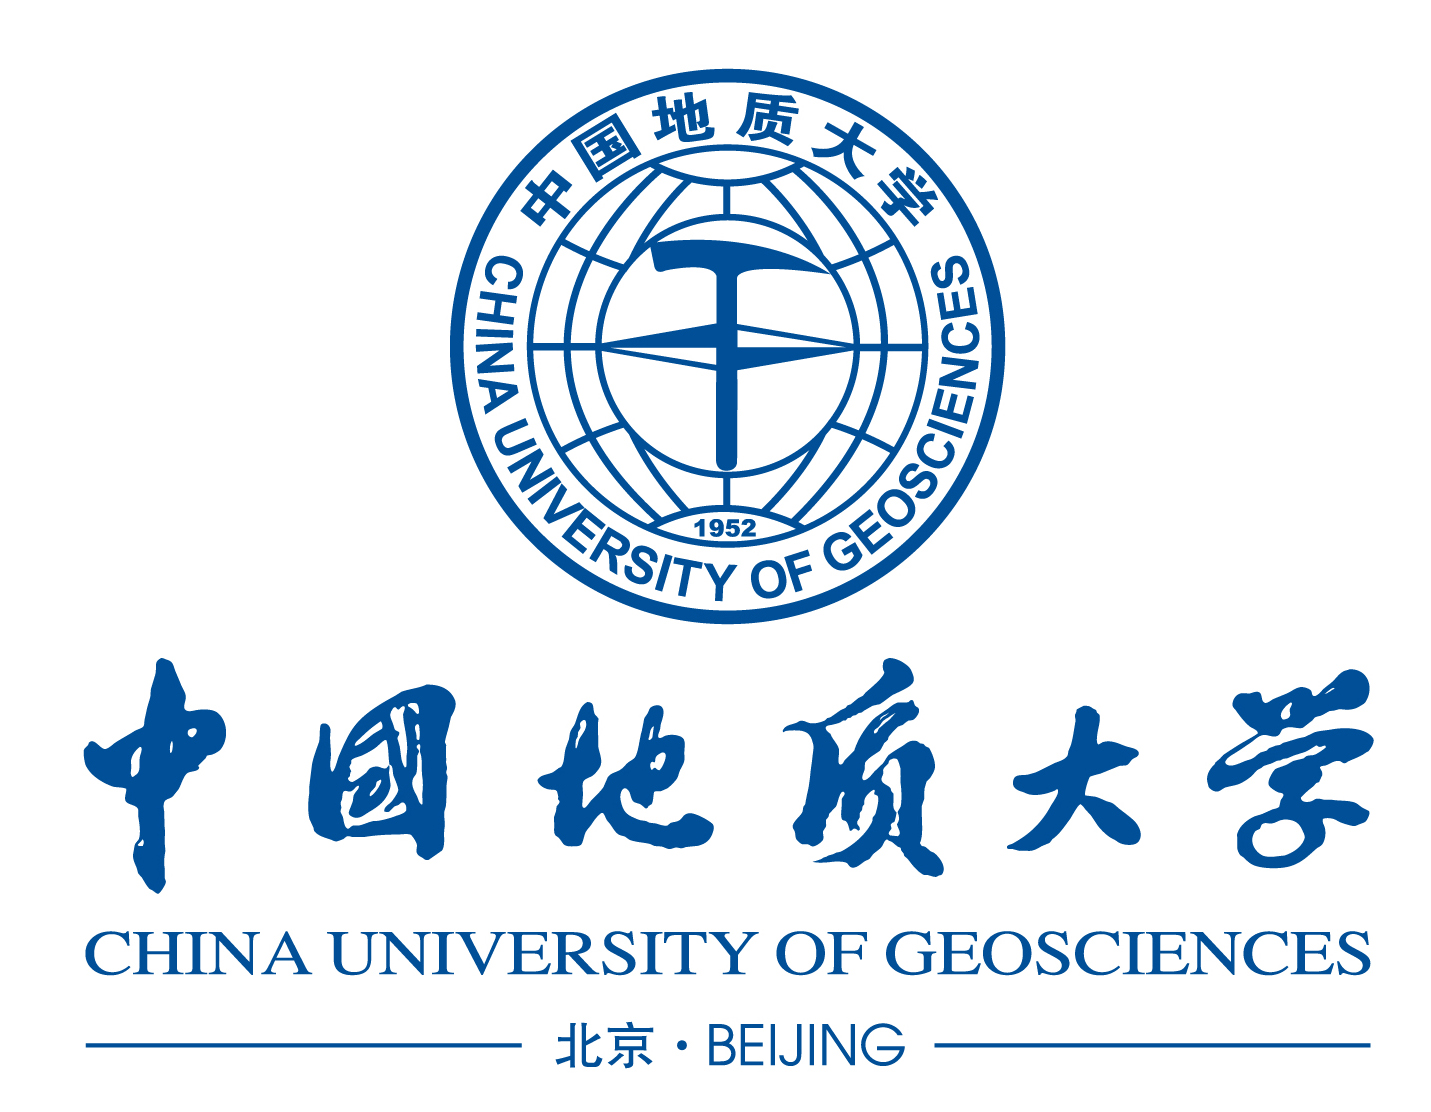 中国地质大学(北京)大学视觉形象识别系统